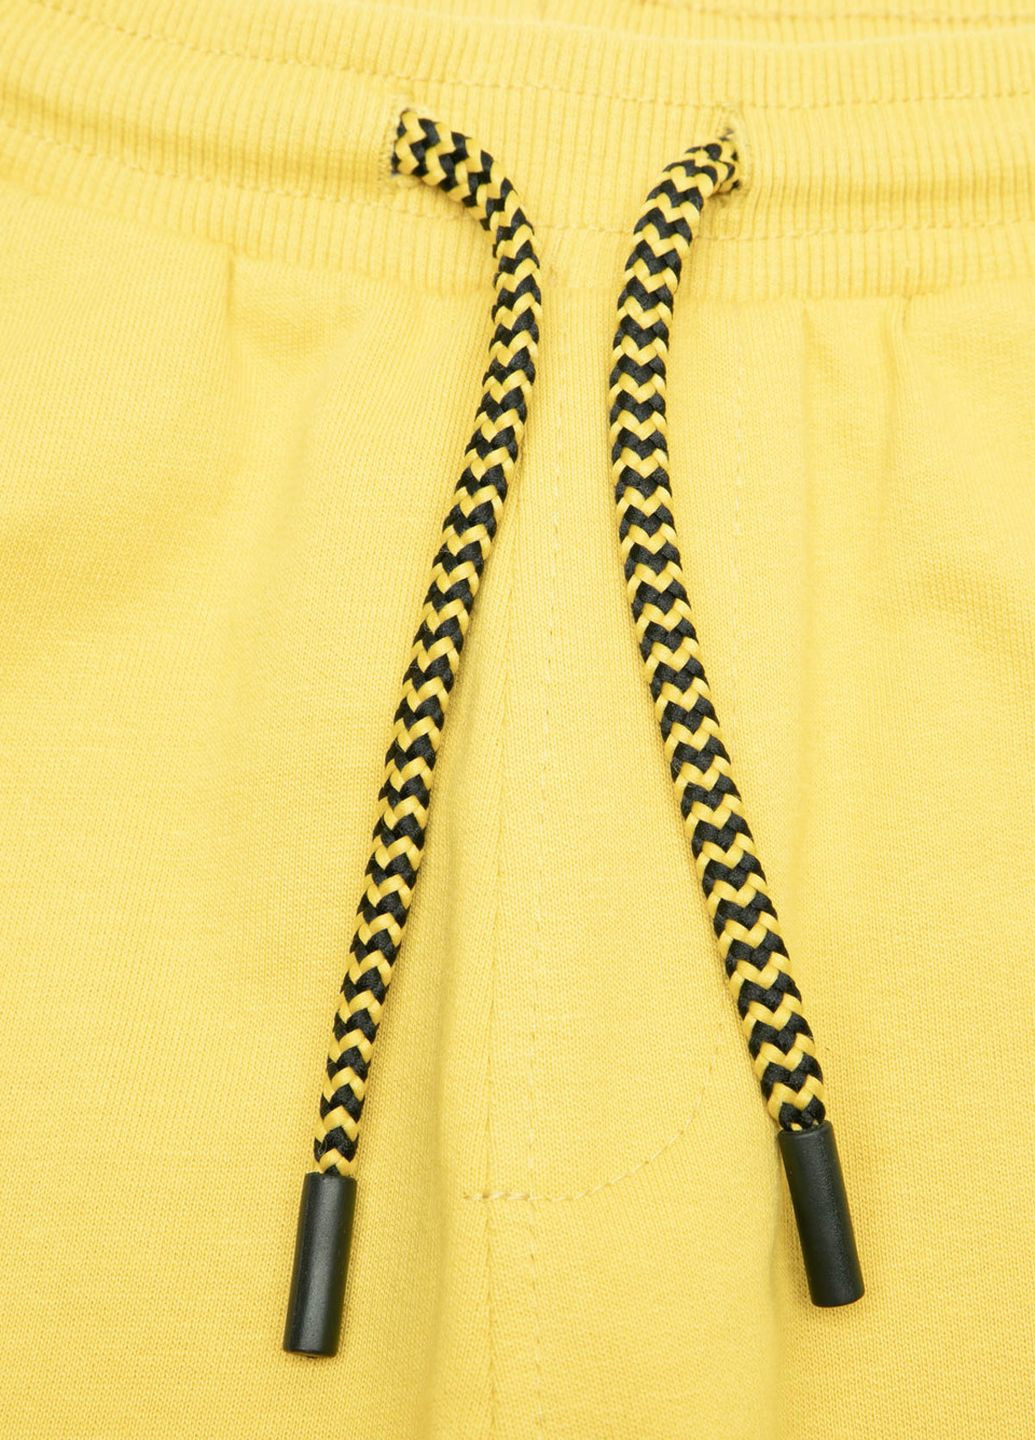 Желтые брюки Coccodrillo